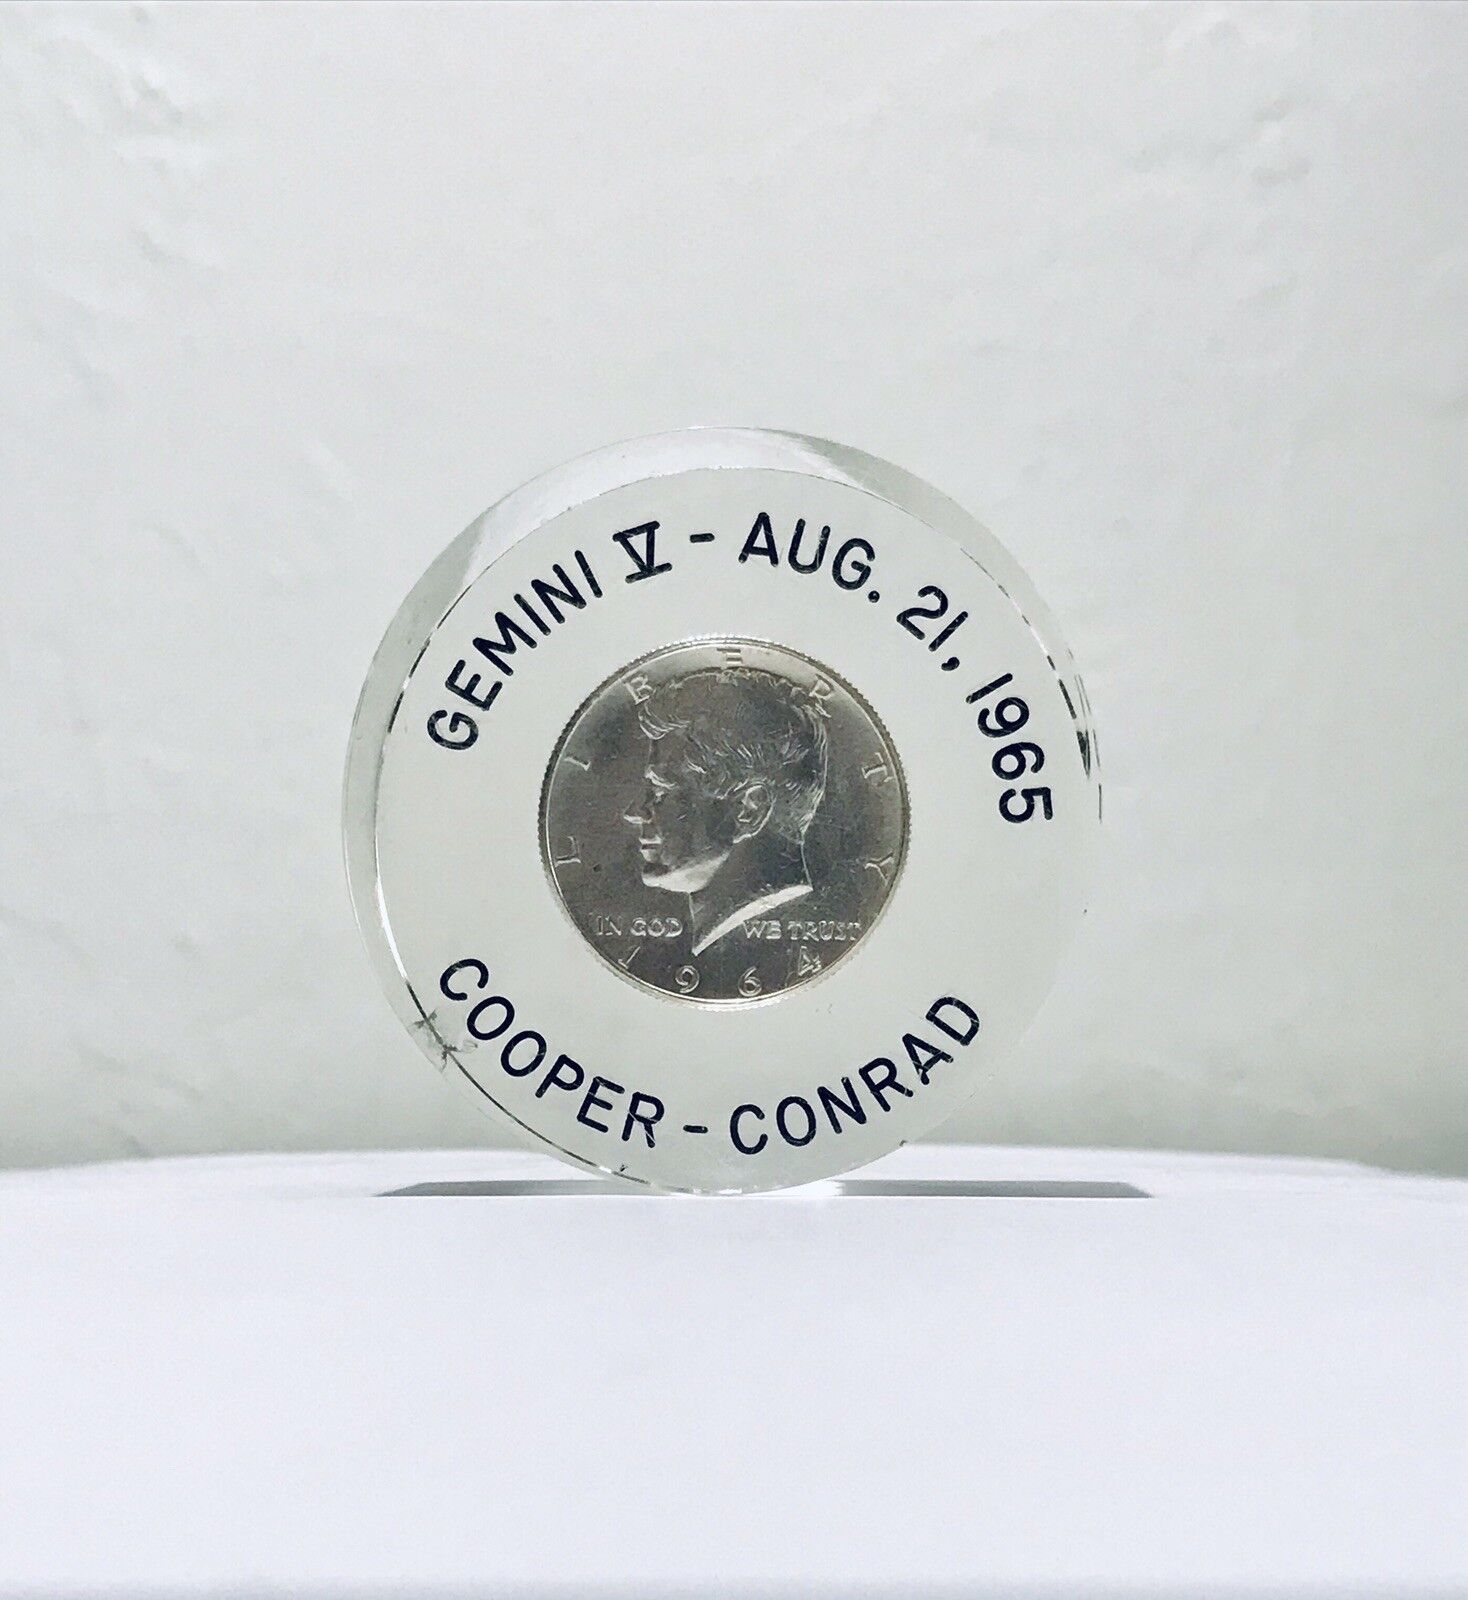 Gemini Space Flown Coin Gemini V * SPACE FLOWN ARTIFACT